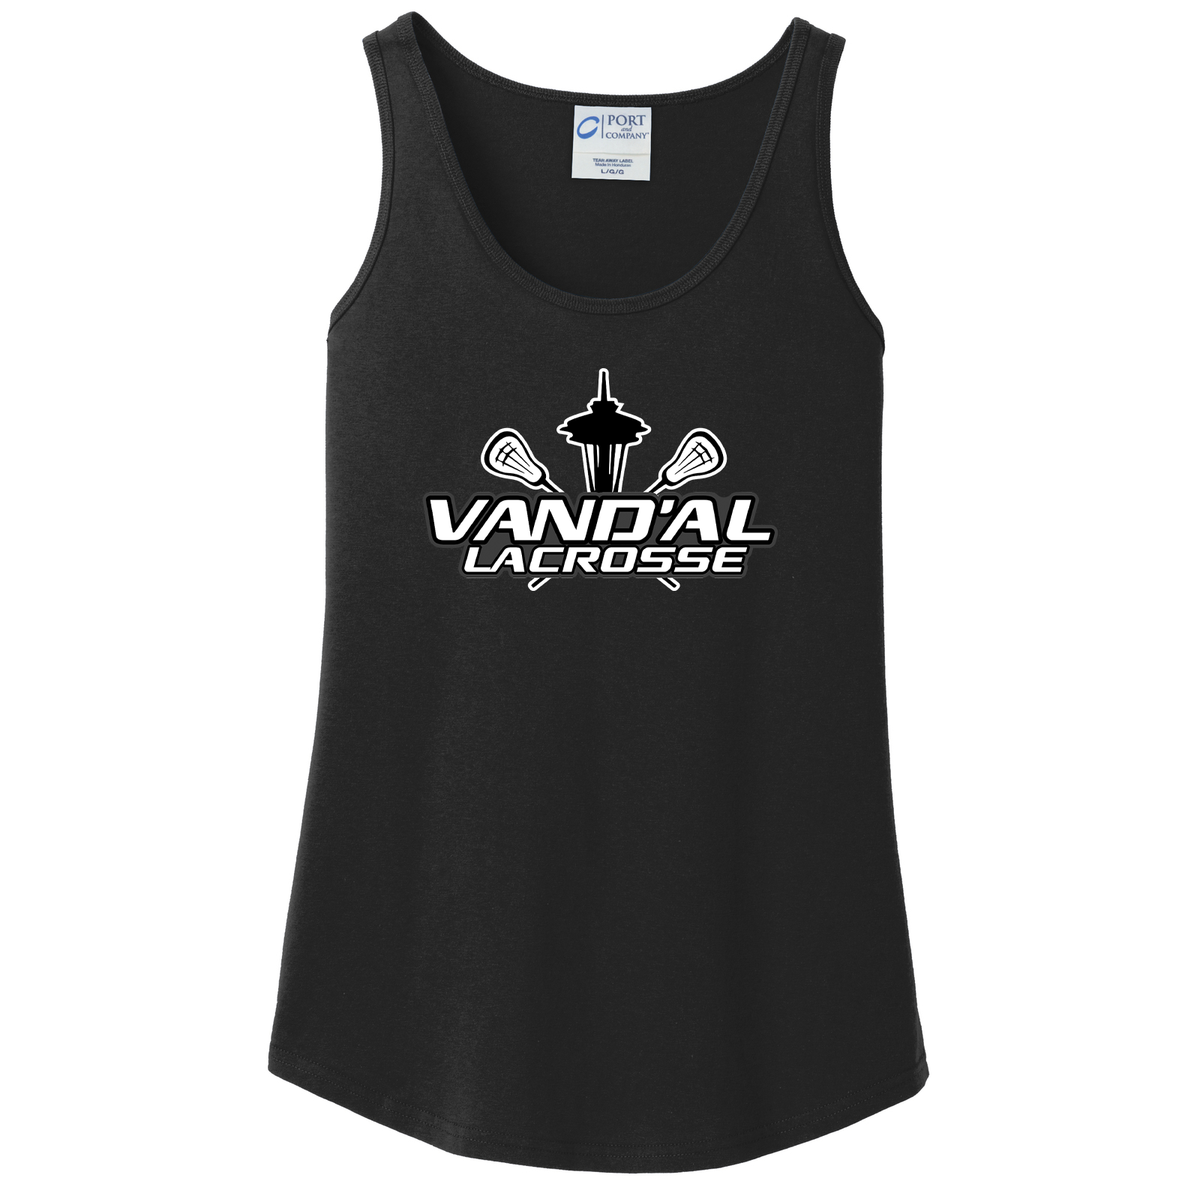 Vand'al Lacrosse Women's Tank Top